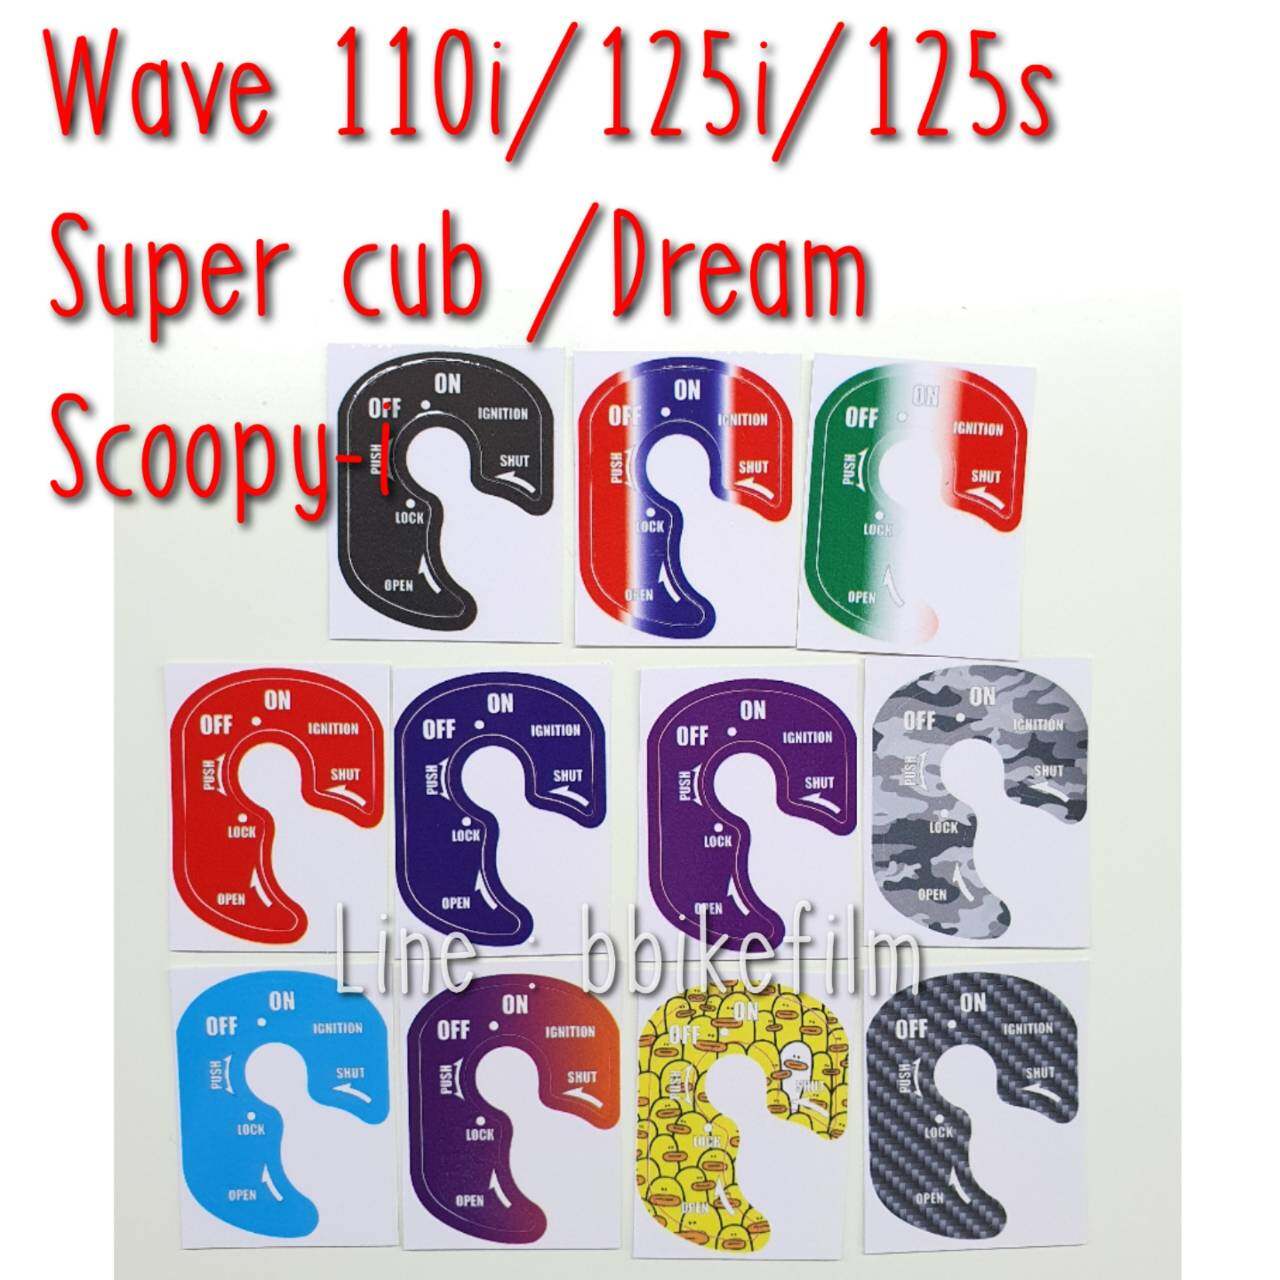 สติ๊กเกอร์กันรอยเบ้ากุญแจ Wave 110i/125i/125s /Super cub /Dream / Scoopy-i ตัวเก่า